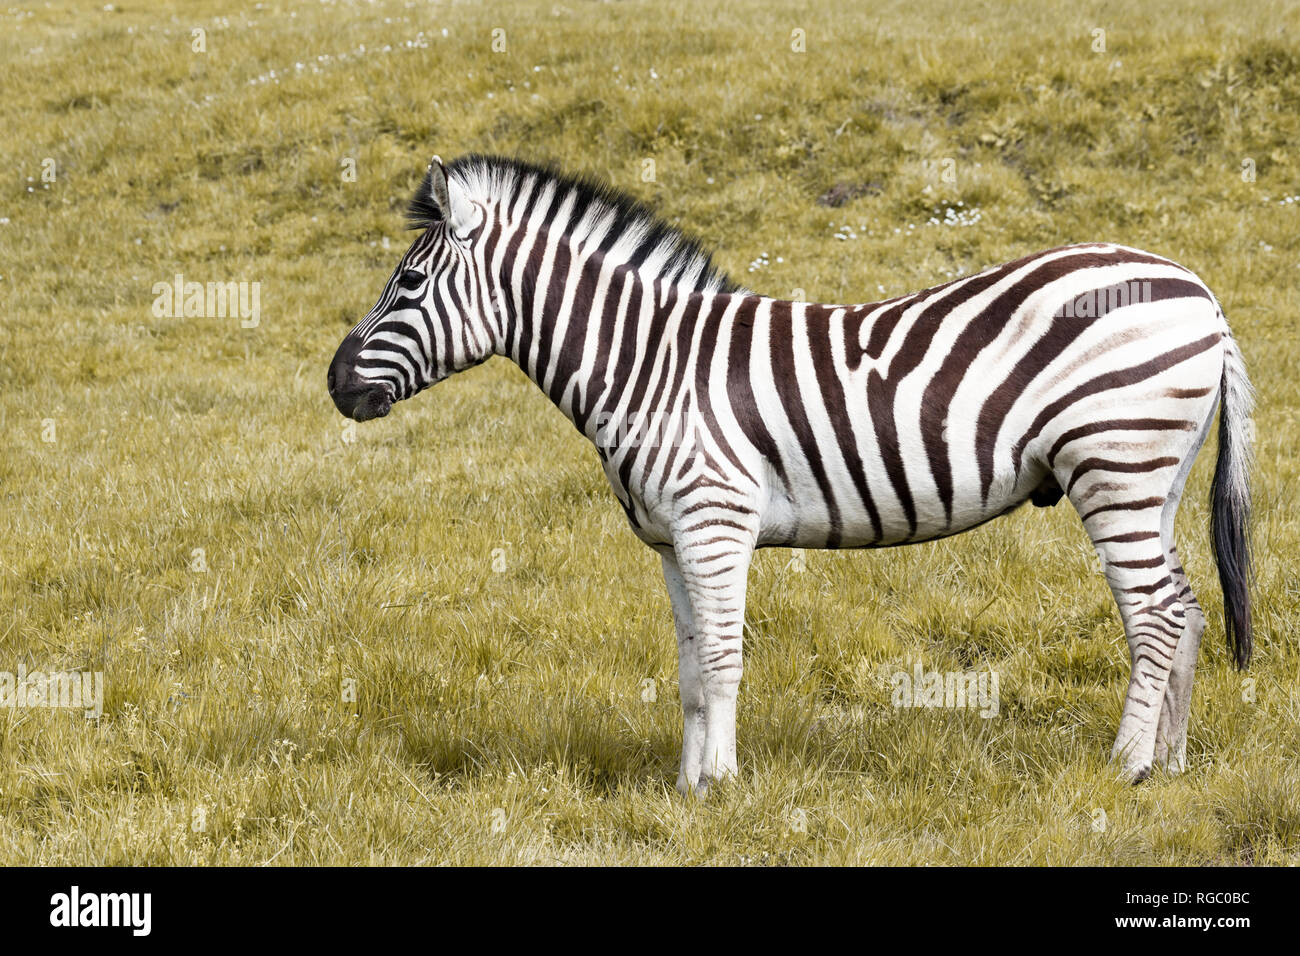 Eine schwarze und weiße stripped Zebra stehend im Profil auf einem grasbewachsenen Hügel. Stockfoto